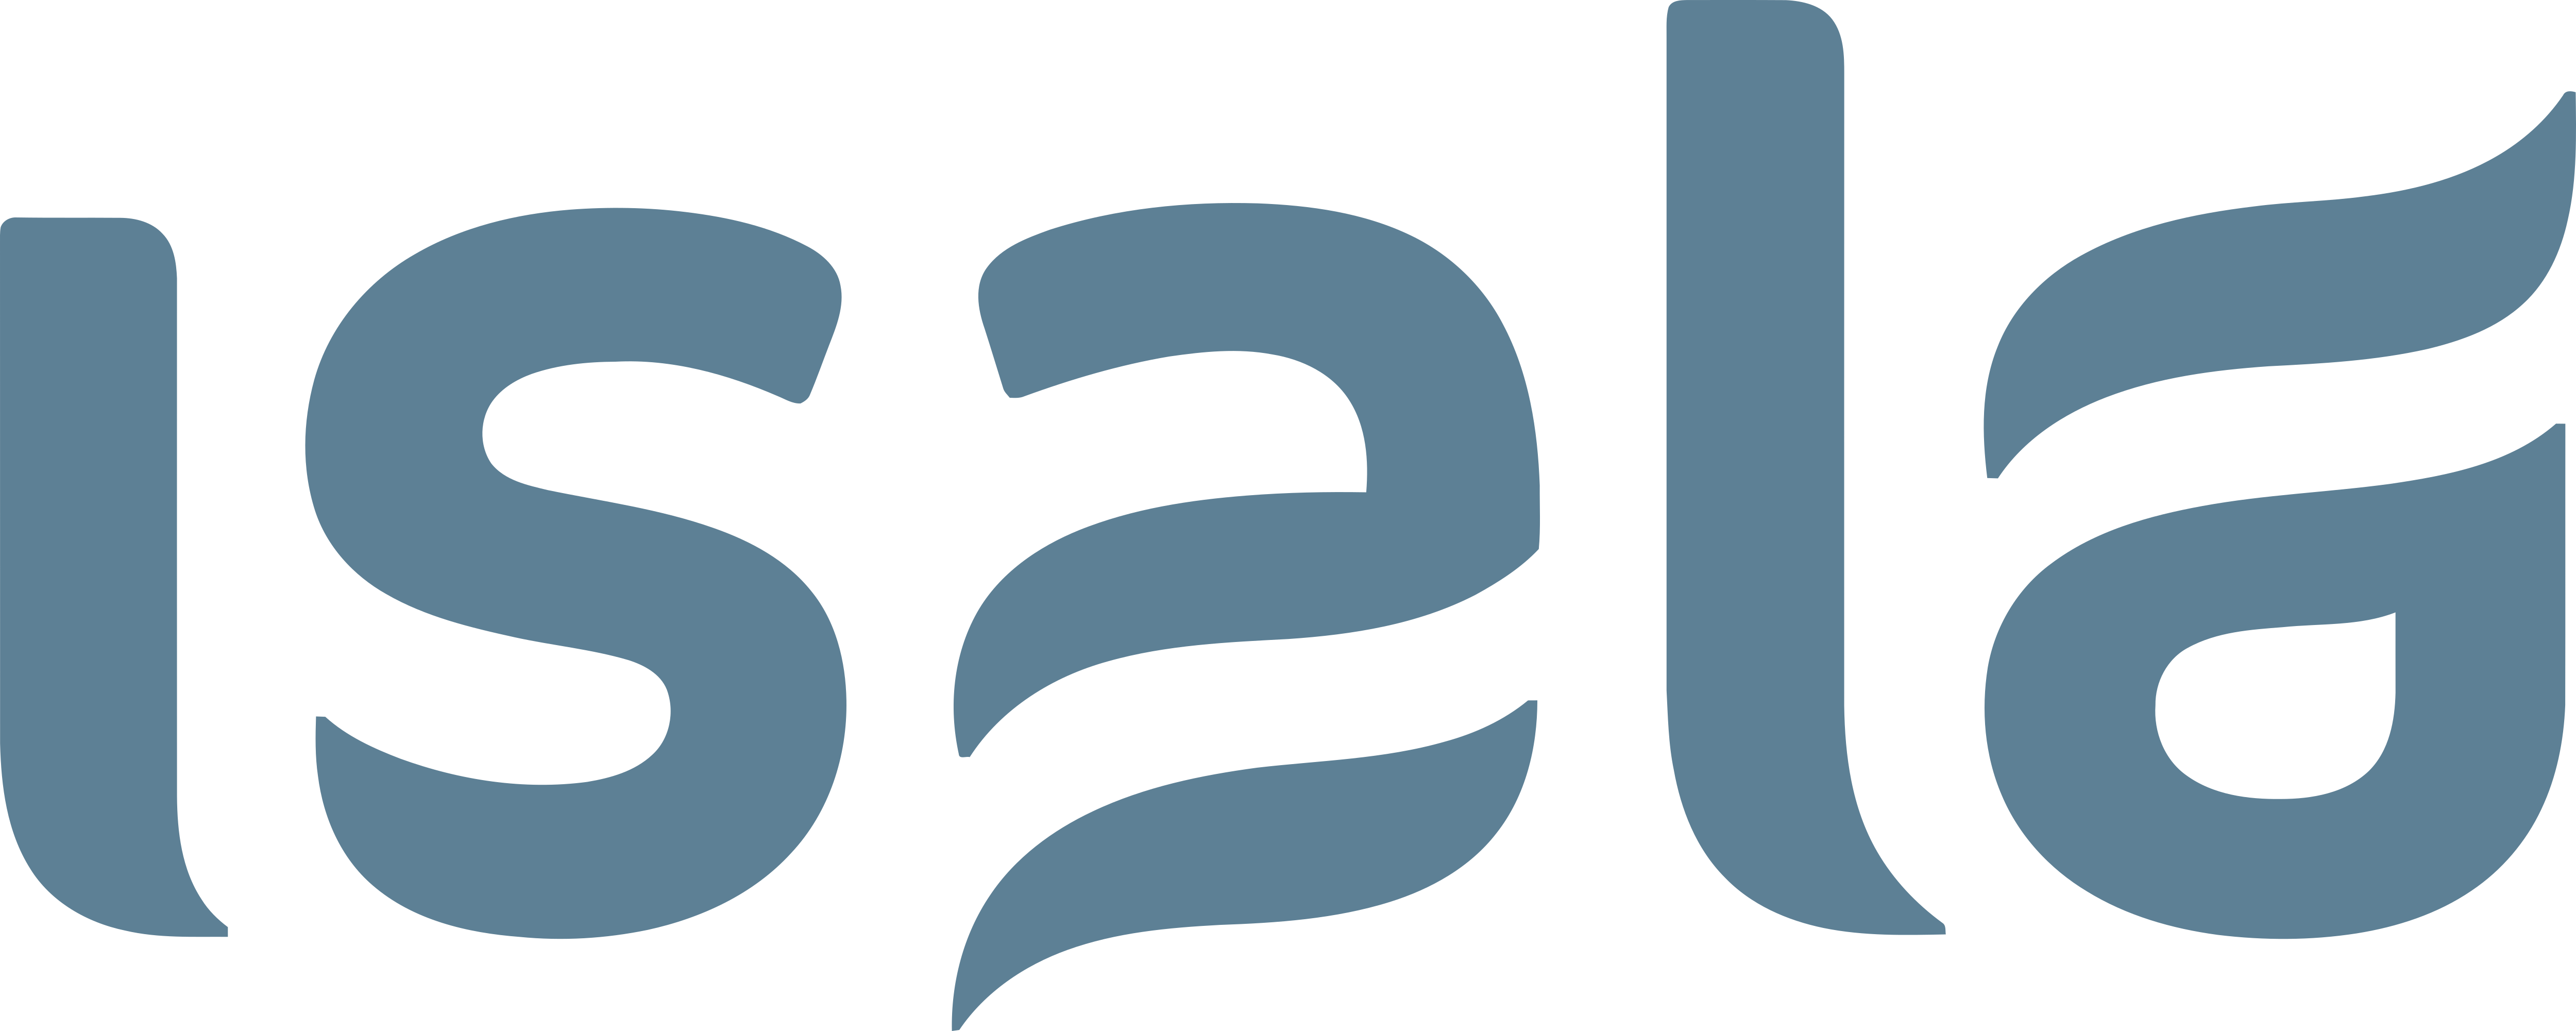 Isala – Logos Download